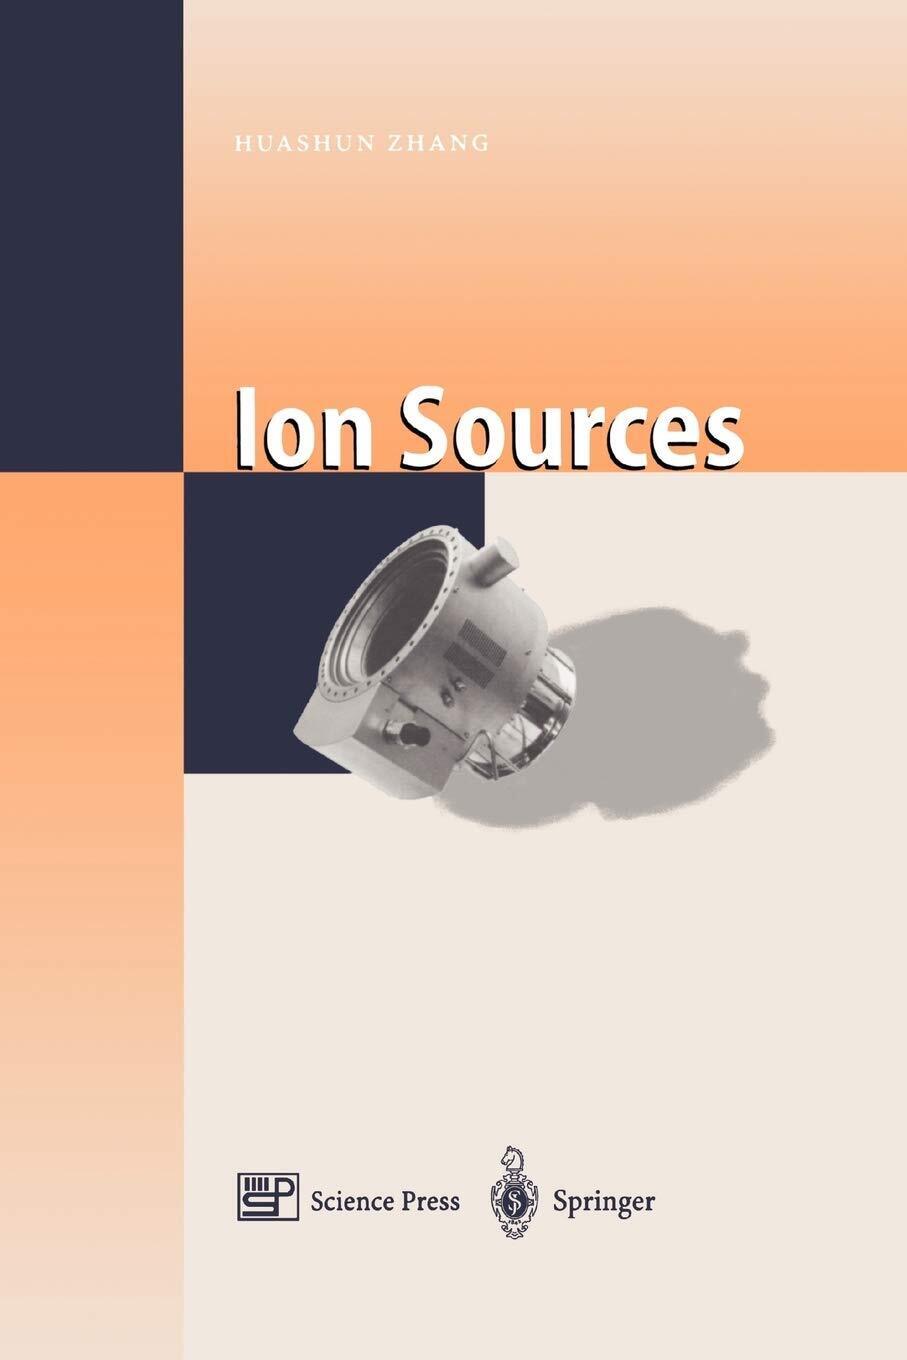 Ion Sources - Huashun Zhang - Springer, 2010